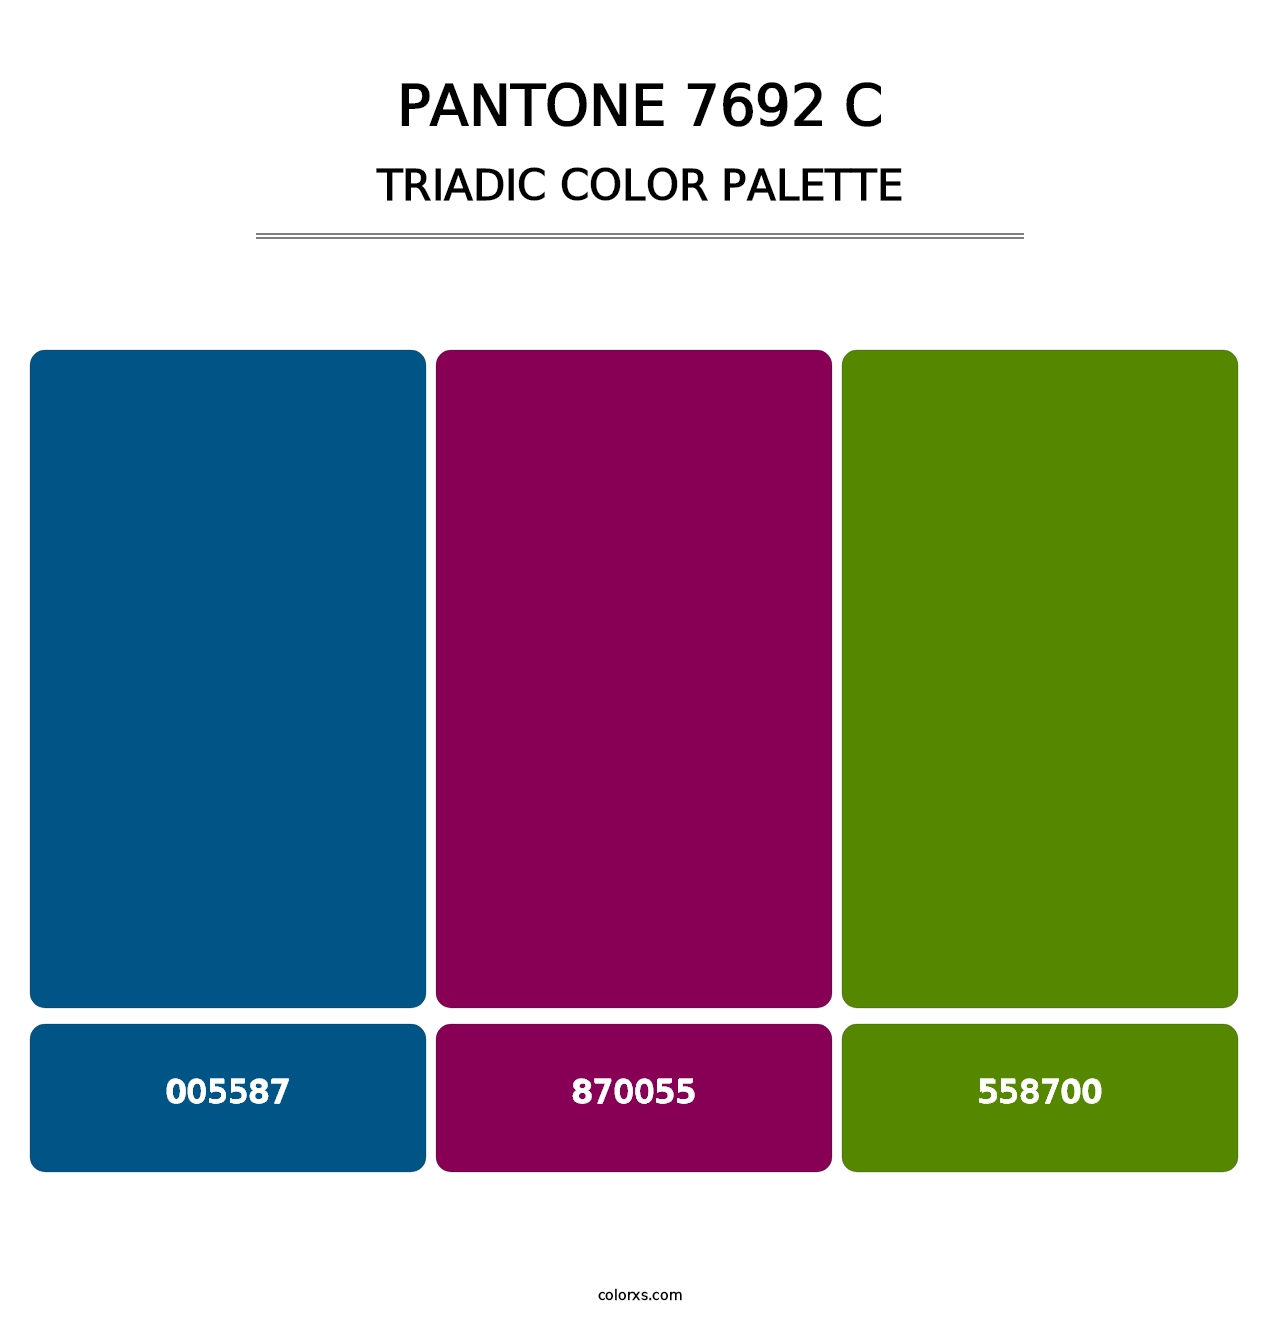 PANTONE 7692 C - Triadic Color Palette